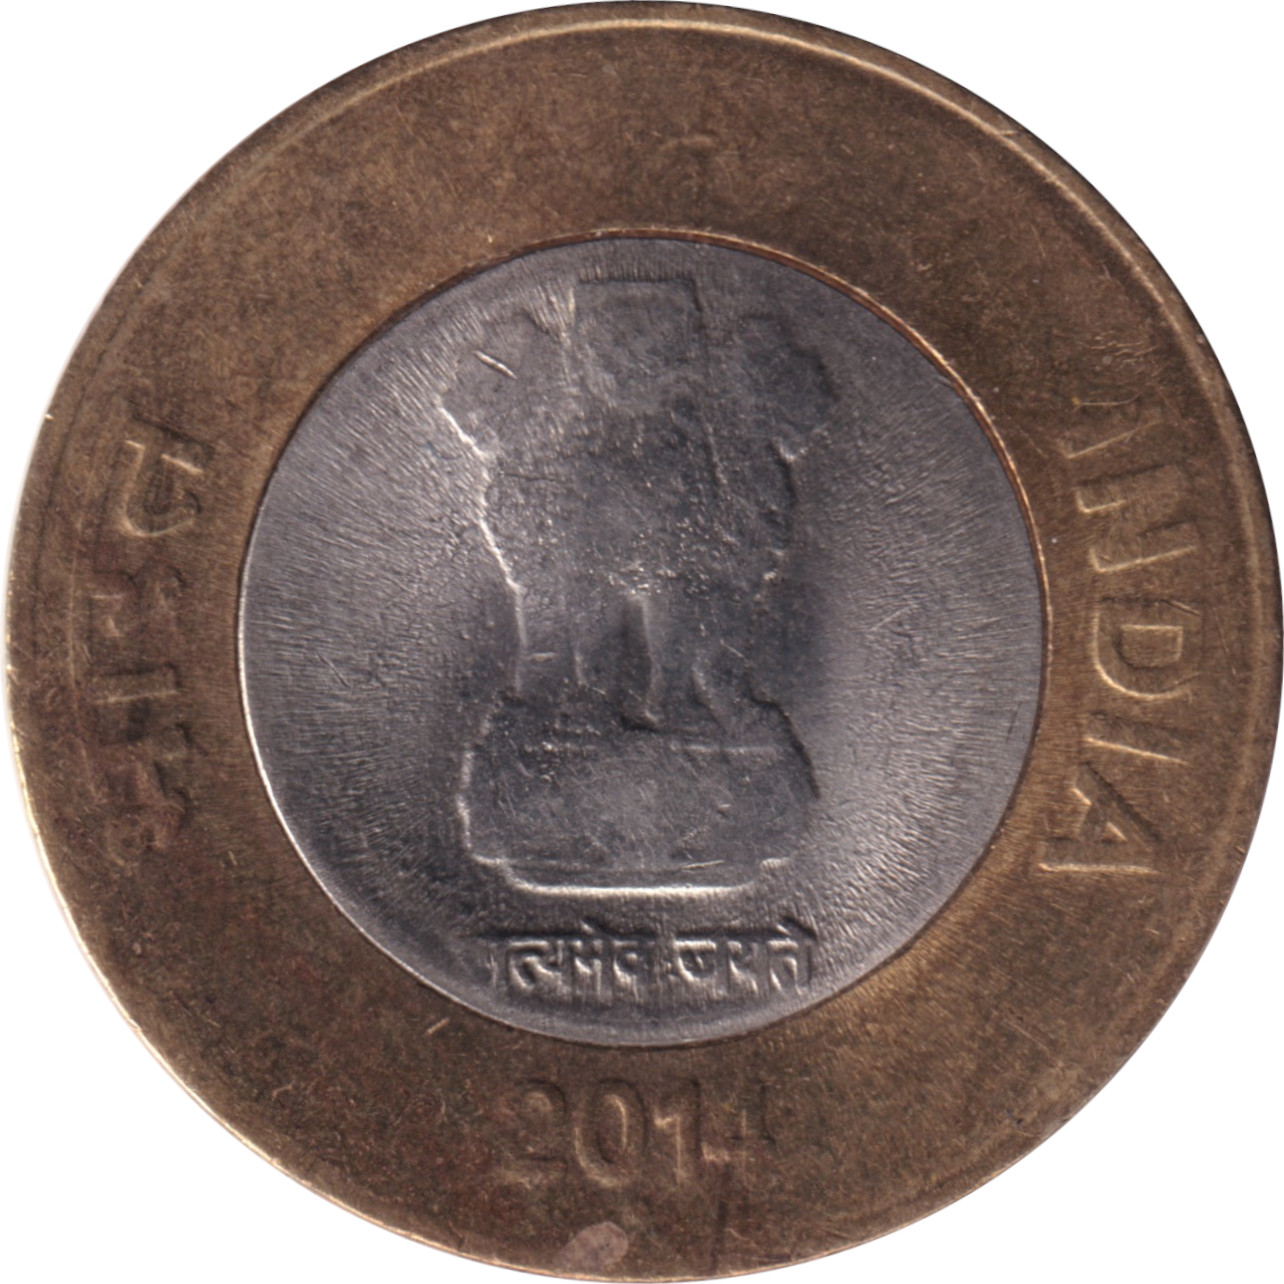 10 rupees - Emblème - Type 1